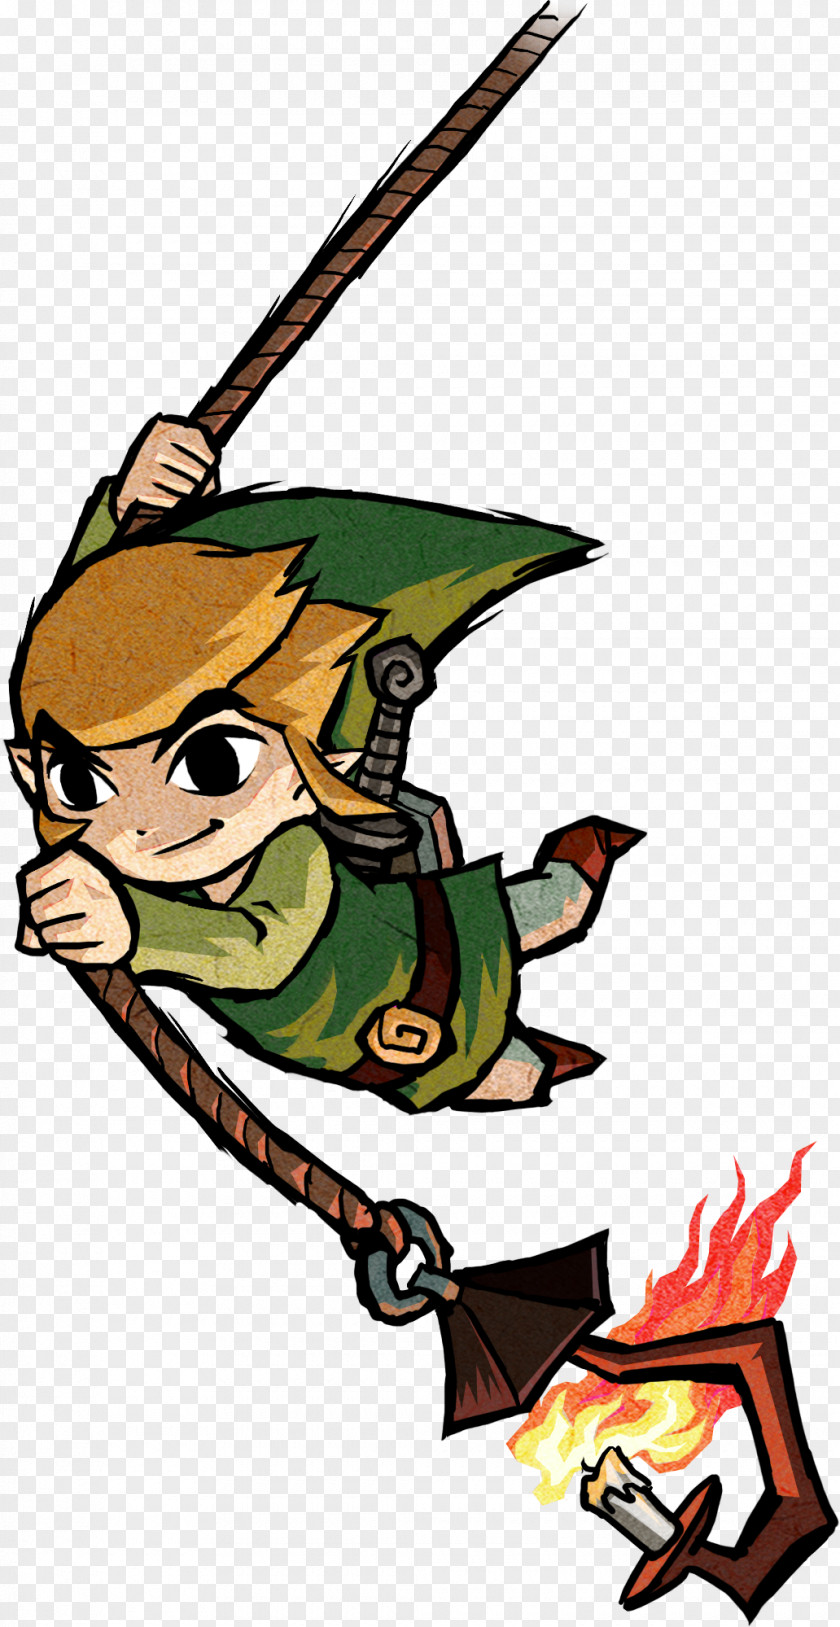 Nintendo The Legend Of Zelda: Wind Waker Link Twilight Princess Zelda Skyward Sword PNG